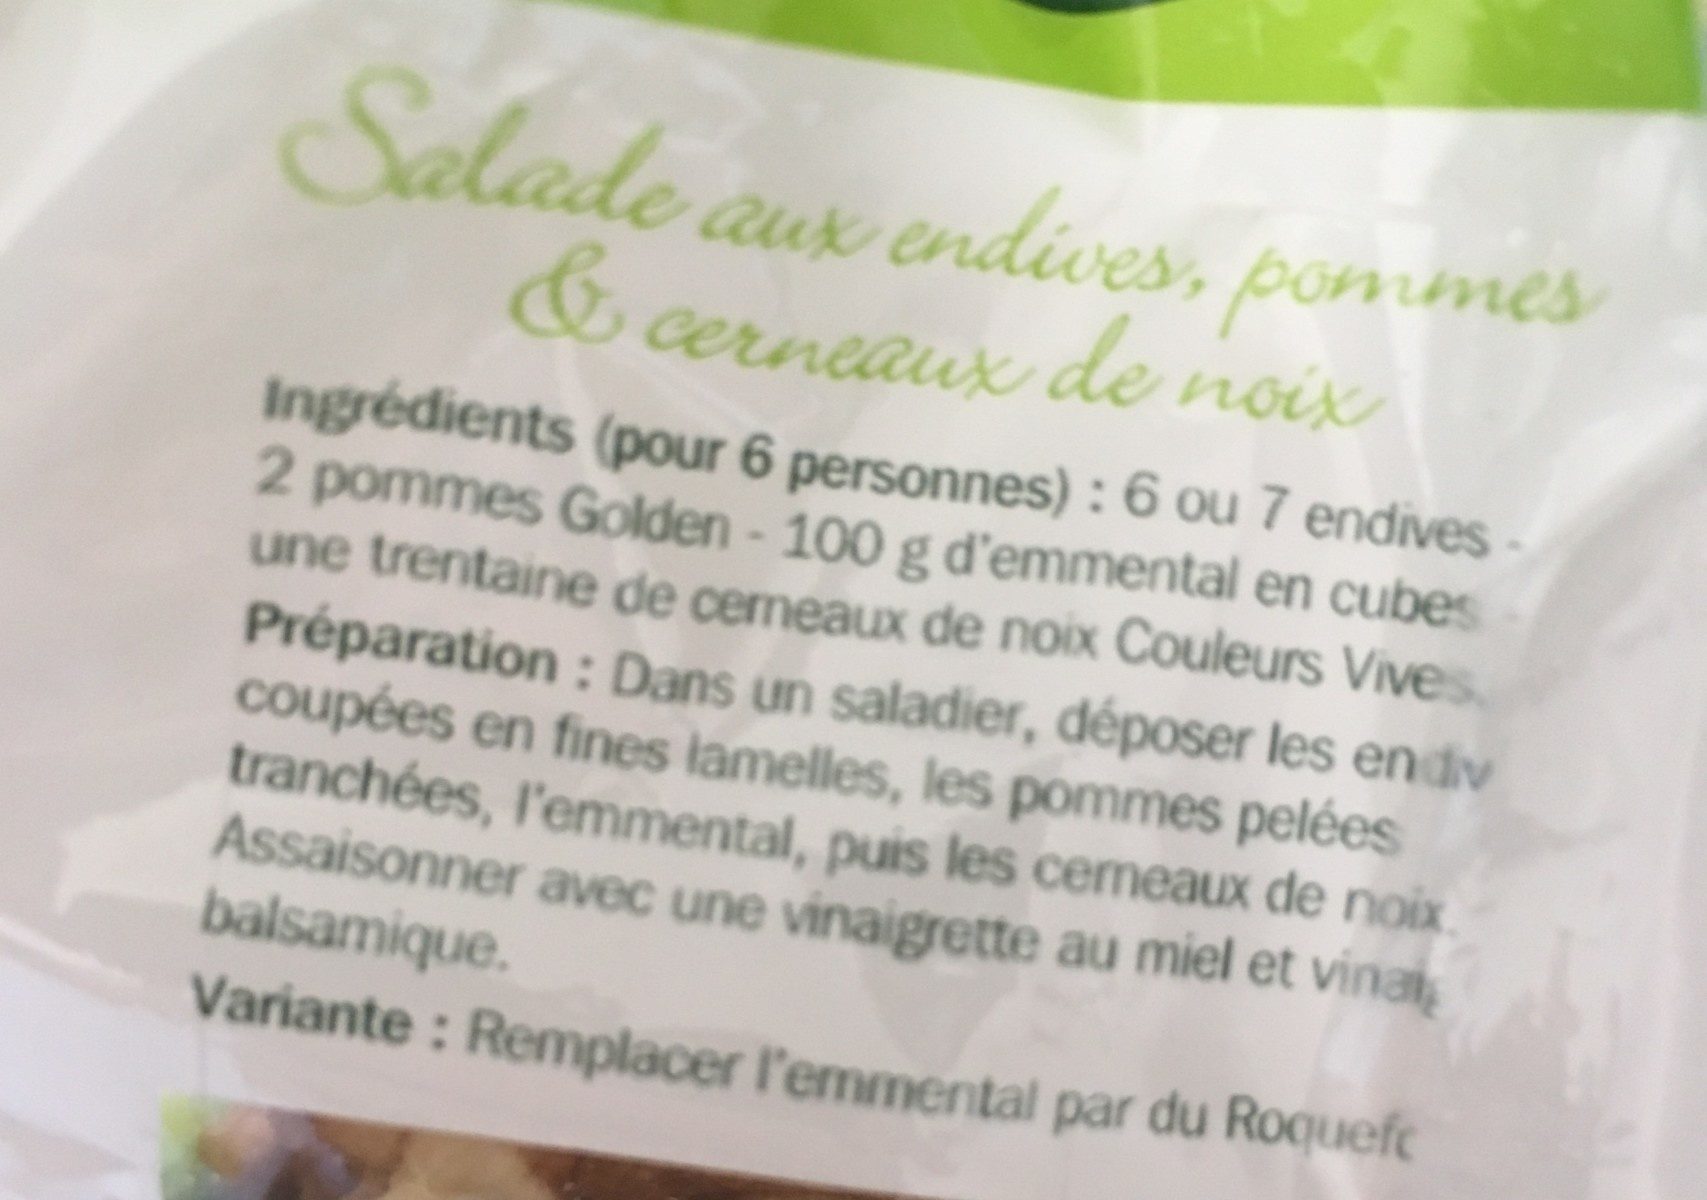 Cerneaux de noix - Ingredients - fr